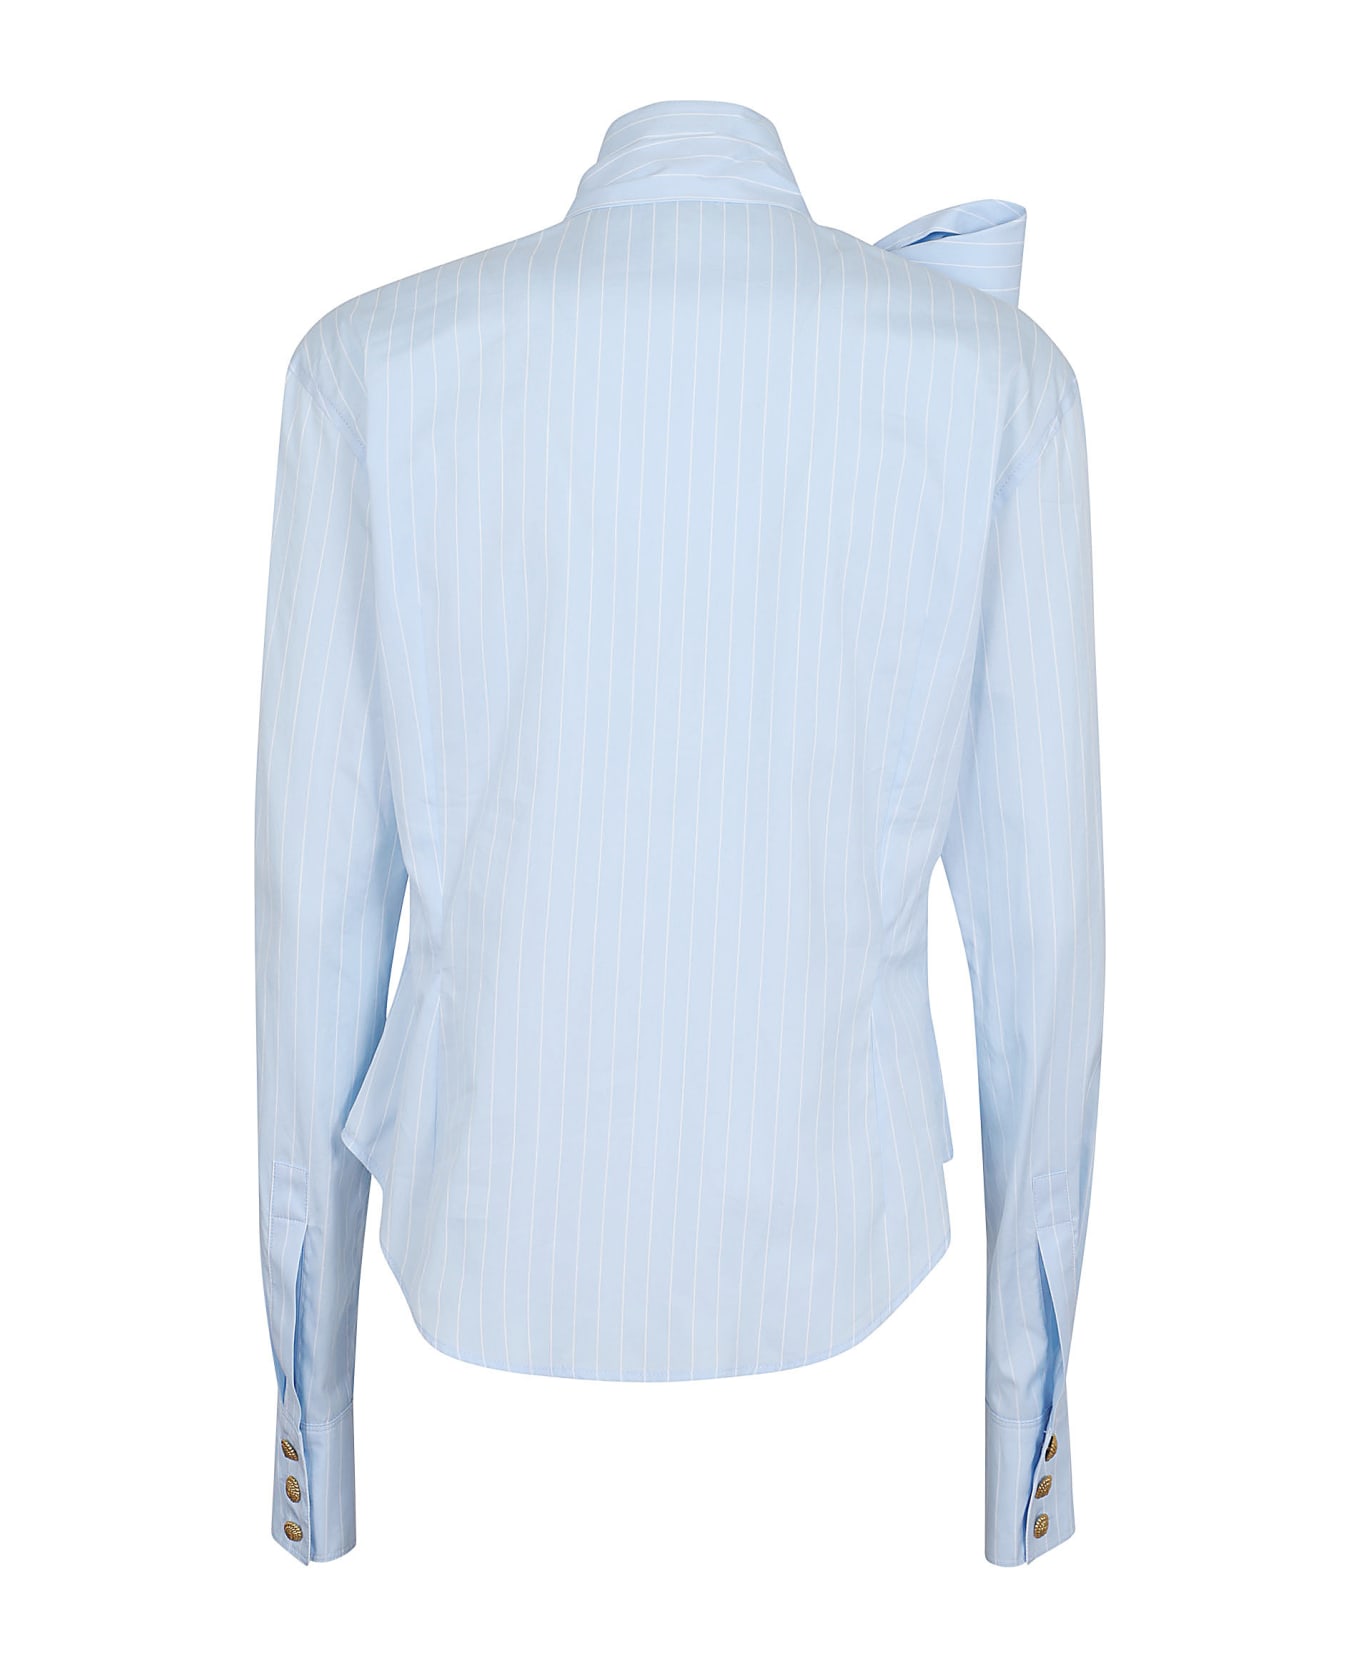 Balmain Pussy Bow Striped Cotton Popeline Shirt - Slj Bleu Pale Blanc